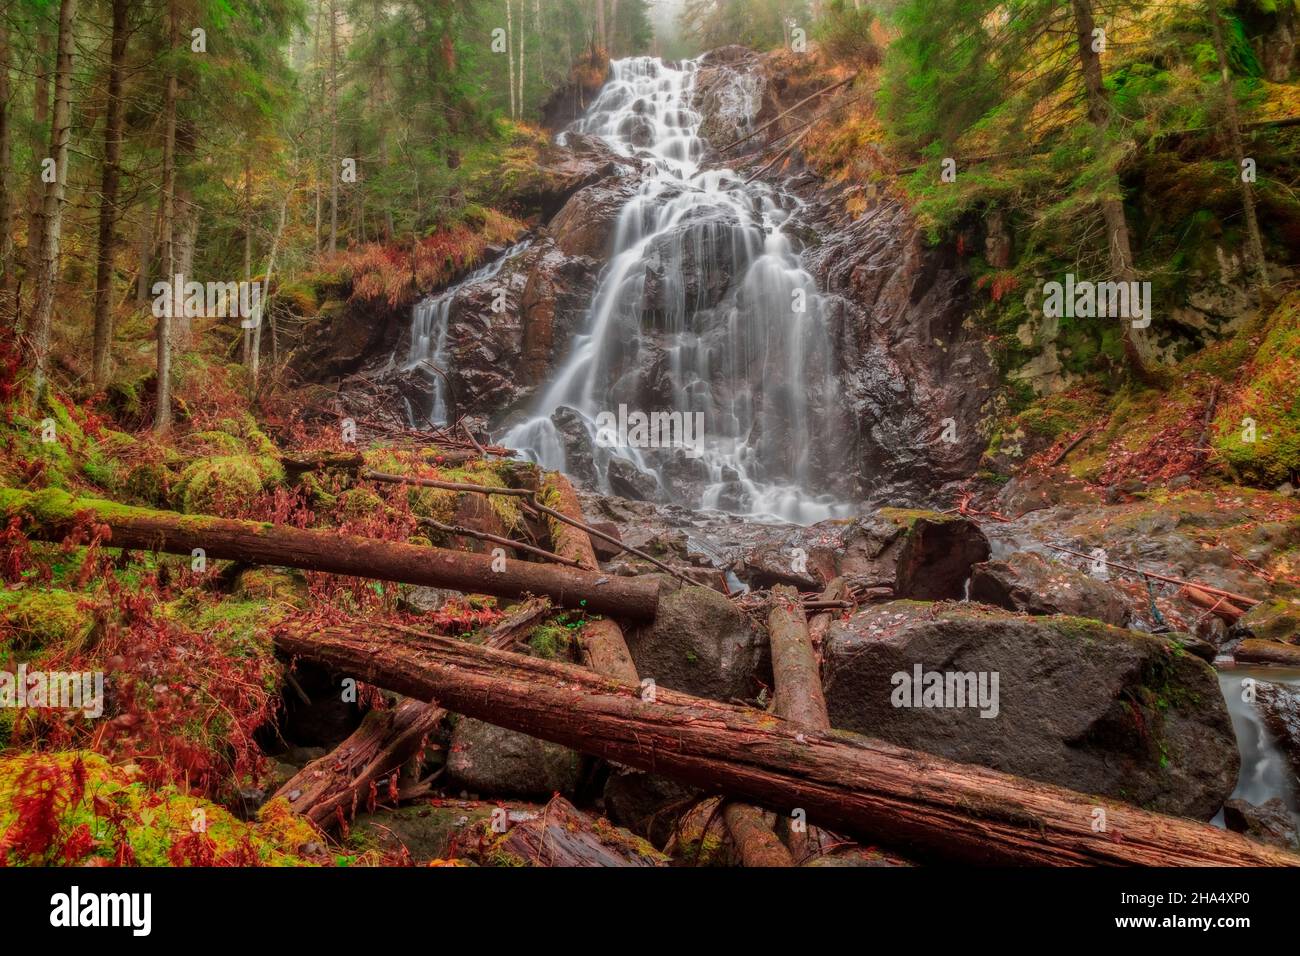 alberi cadenti con una cascata in una foresta, paesaggio autunnale Foto Stock